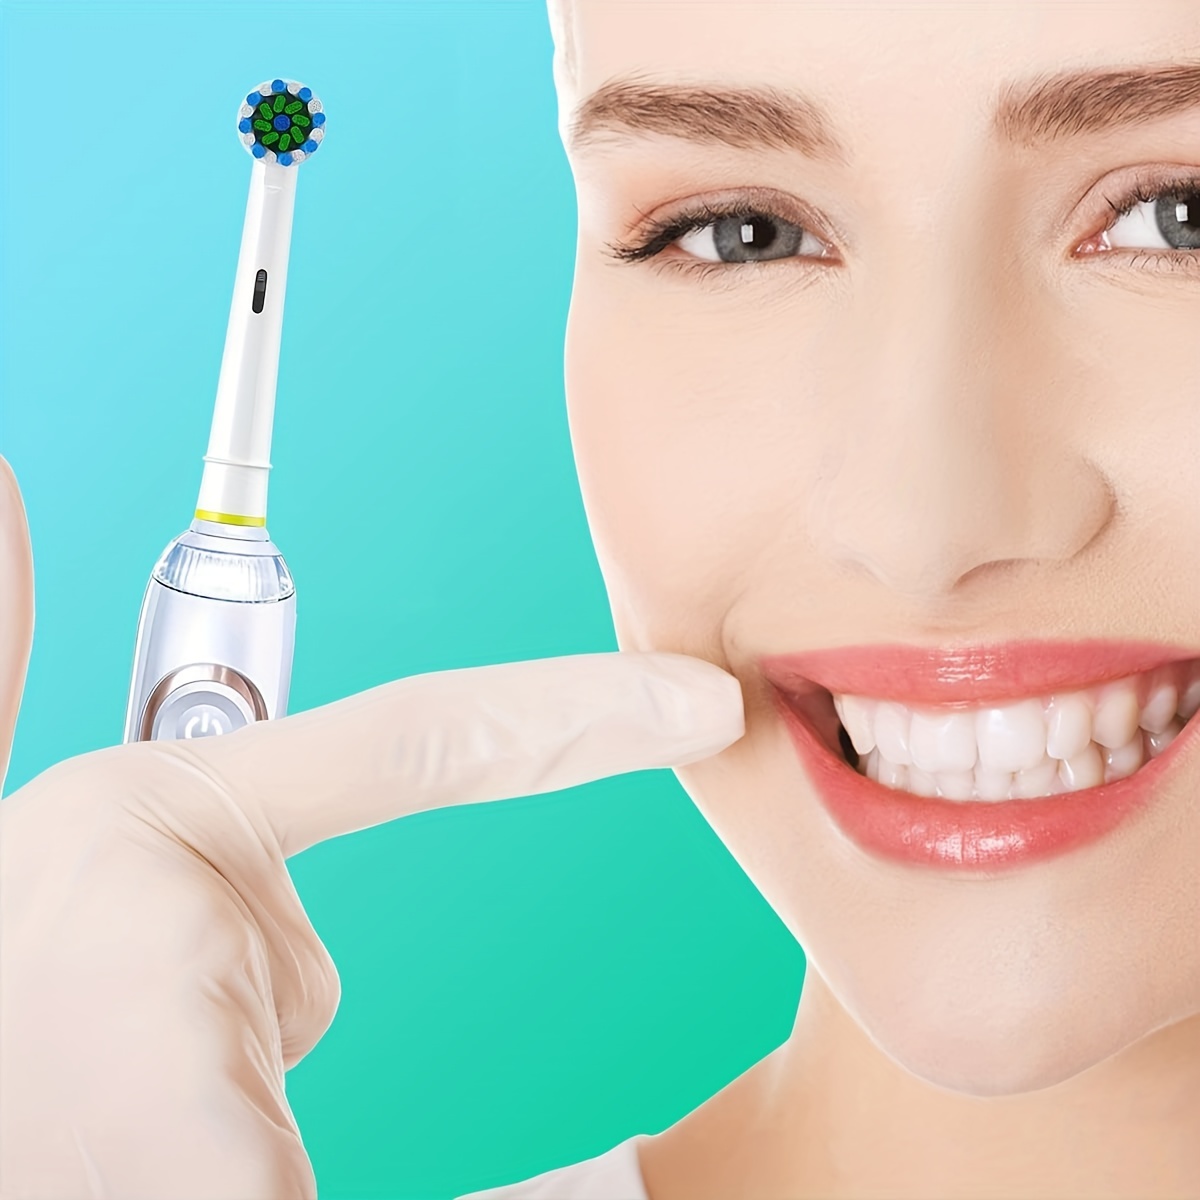 Cabezales de cepillo de repuesto para Oral B, paquete de 4 cabezales de  cepillo eléctrico genéricos cruzados para Oralb Braun, cepillos de dientes